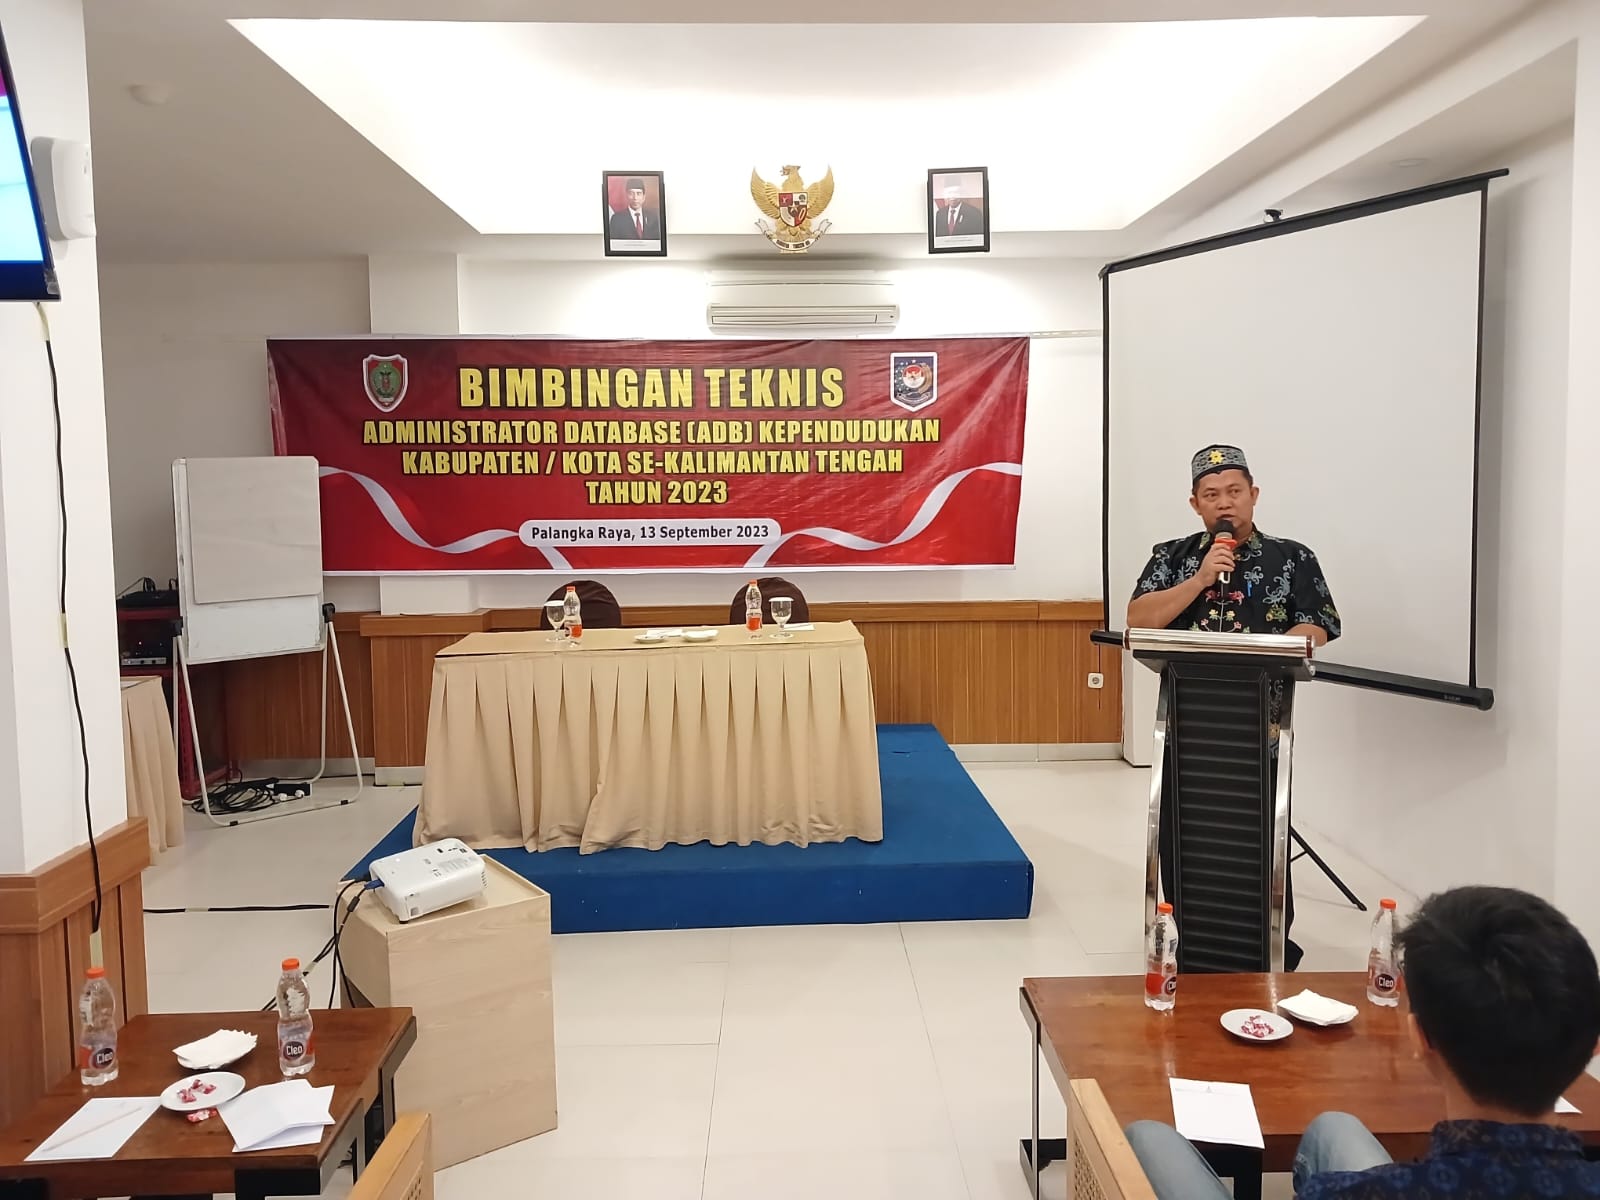 Bimbingan Teknis Administrator DataBase (ADB) Kependudukan Kabupaten/Kota Se-Kalimantan Tengah